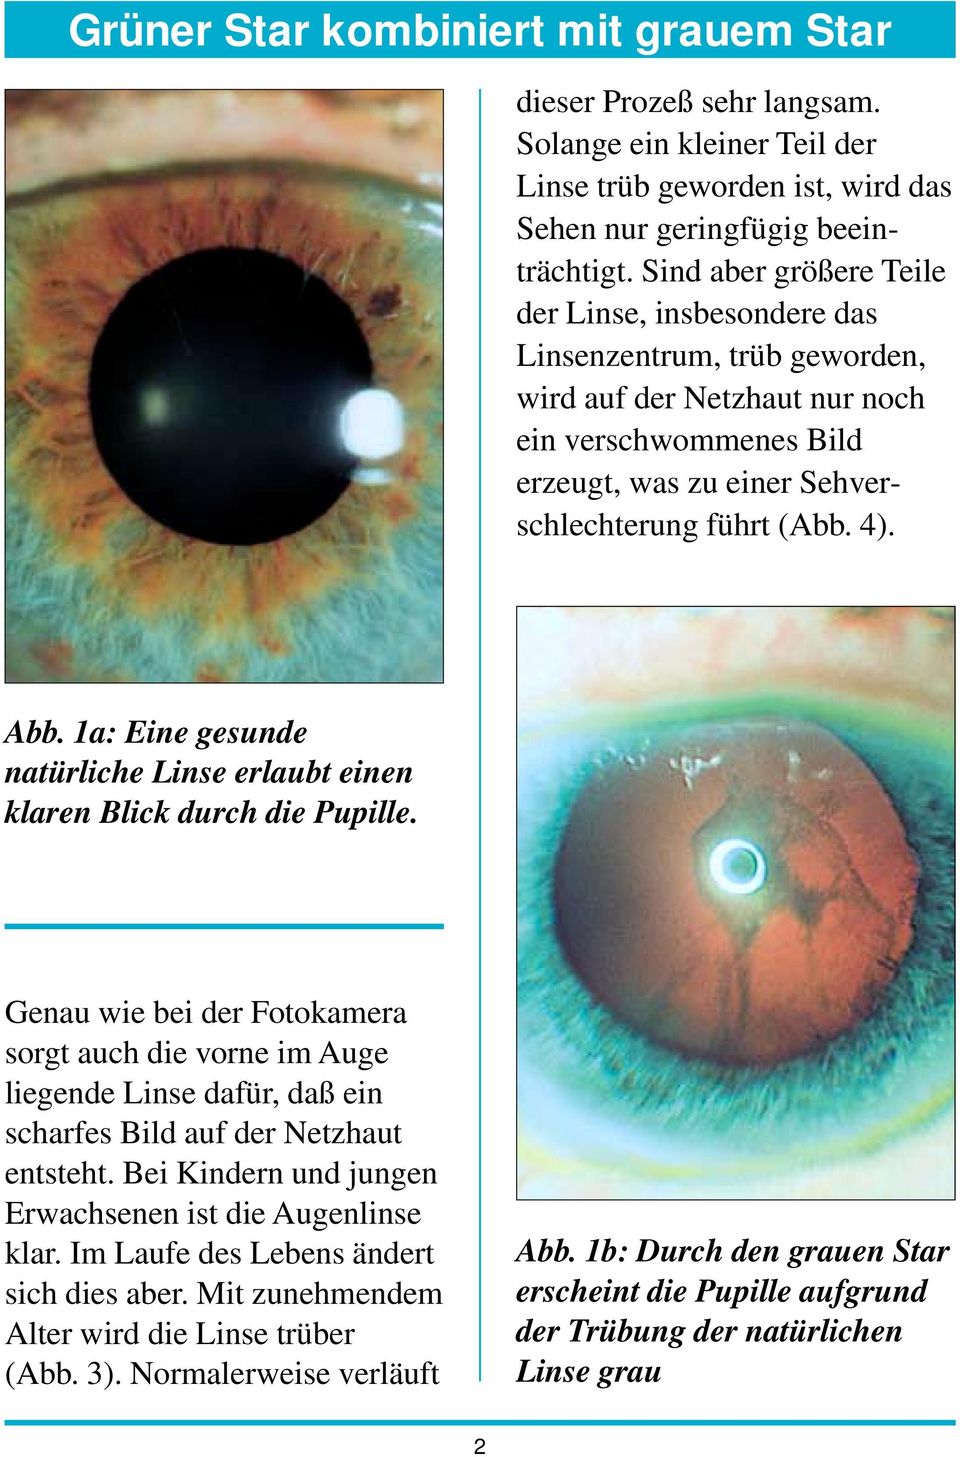 1a: Eine gesunde natürliche Linse erlaubt einen klaren Blick durch die Pupille.